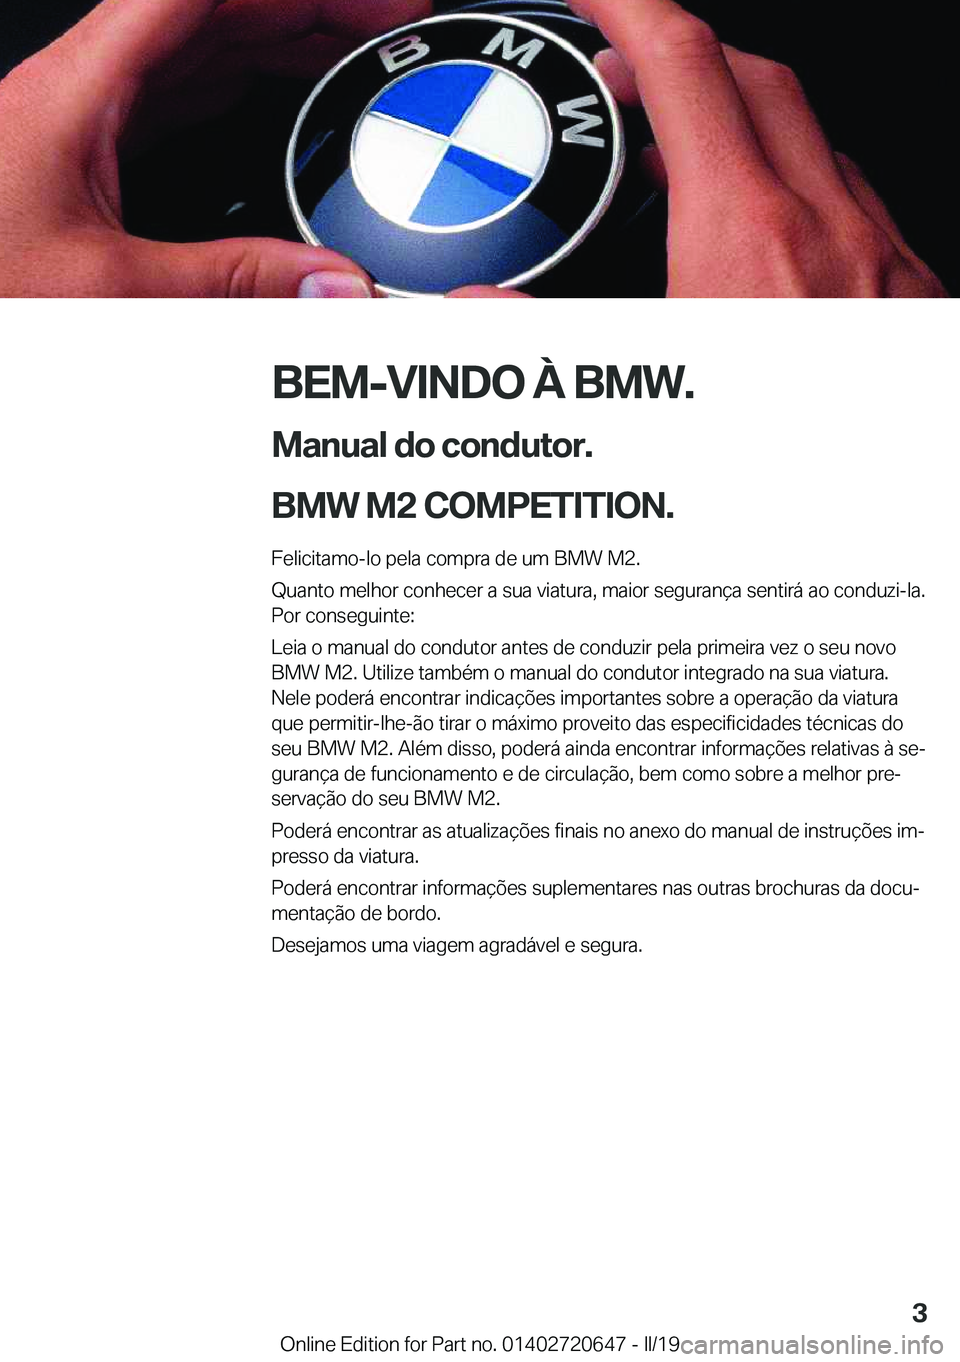 BMW M2 2020  Manual do condutor (in Portuguese) �B�E�M�-�V�I�N�D�O��À��B�M�W�.
�M�a�n�u�a�l��d�o��c�o�n�d�u�t�o�r�.
�B�M�W��M�2��C�O�M�P�E�T�I�T�I�O�N�.� �F�e�l�i�c�i�t�a�m�o�-�l�o��p�e�l�a��c�o�m�p�r�a��d�e��u�m��B�M�W��M�2�.�Q�u�a�n